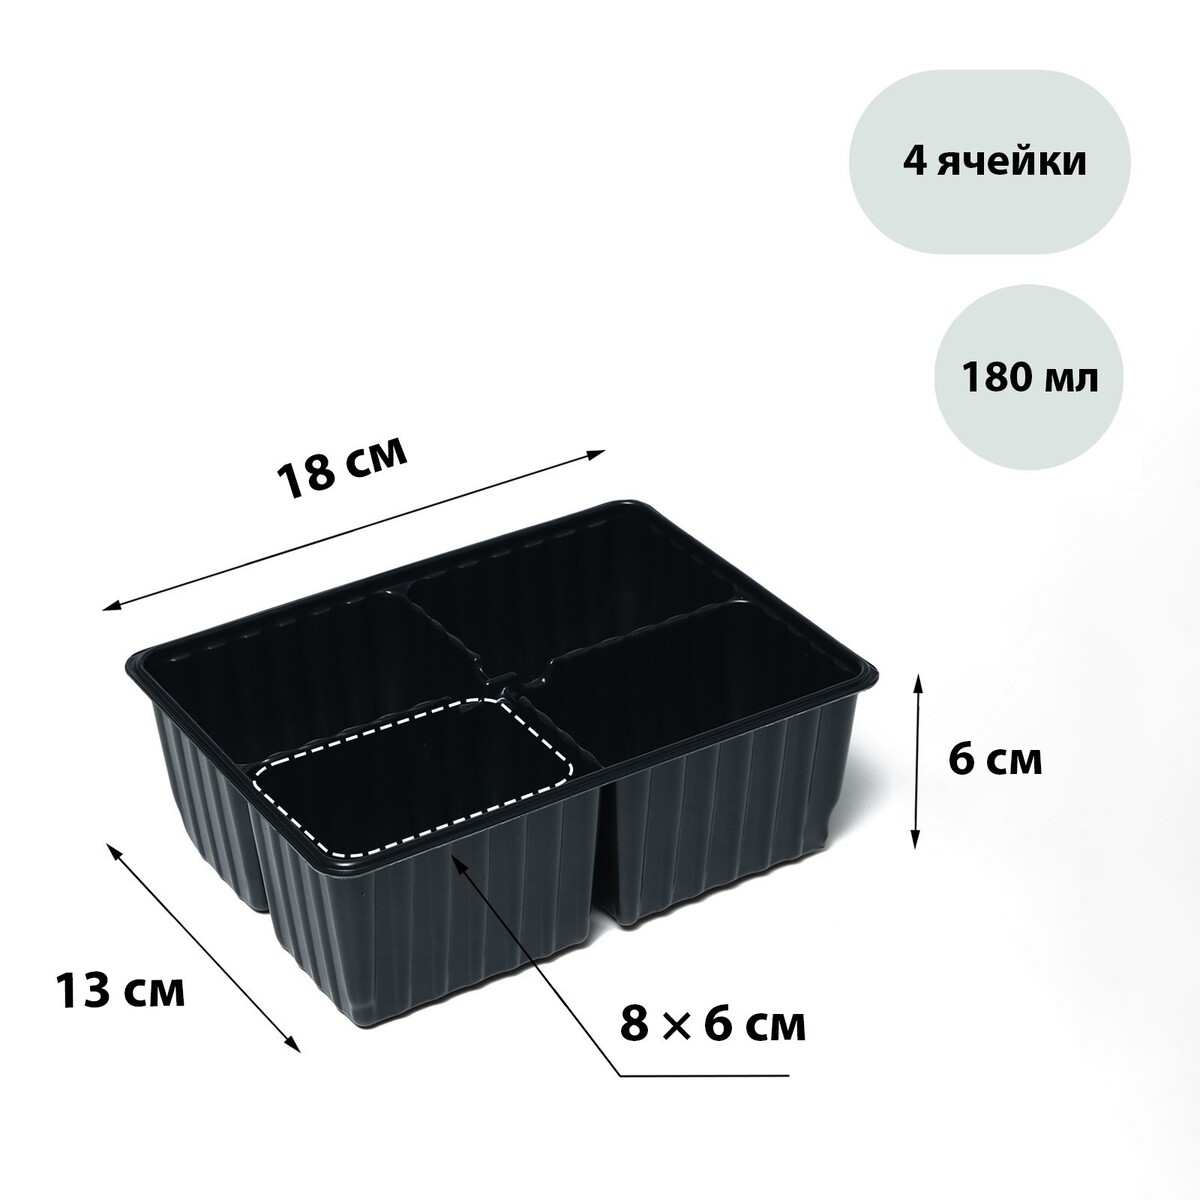 Кассета для рассады, на 4 ячейки, по 180 мл, пластиковая, черная, 18 × 13 × 6 см, в наборе 10 кассет, greengo горшок для рассады 210 мл d 7 см h 6 5 см в наборе 5 шт greengo